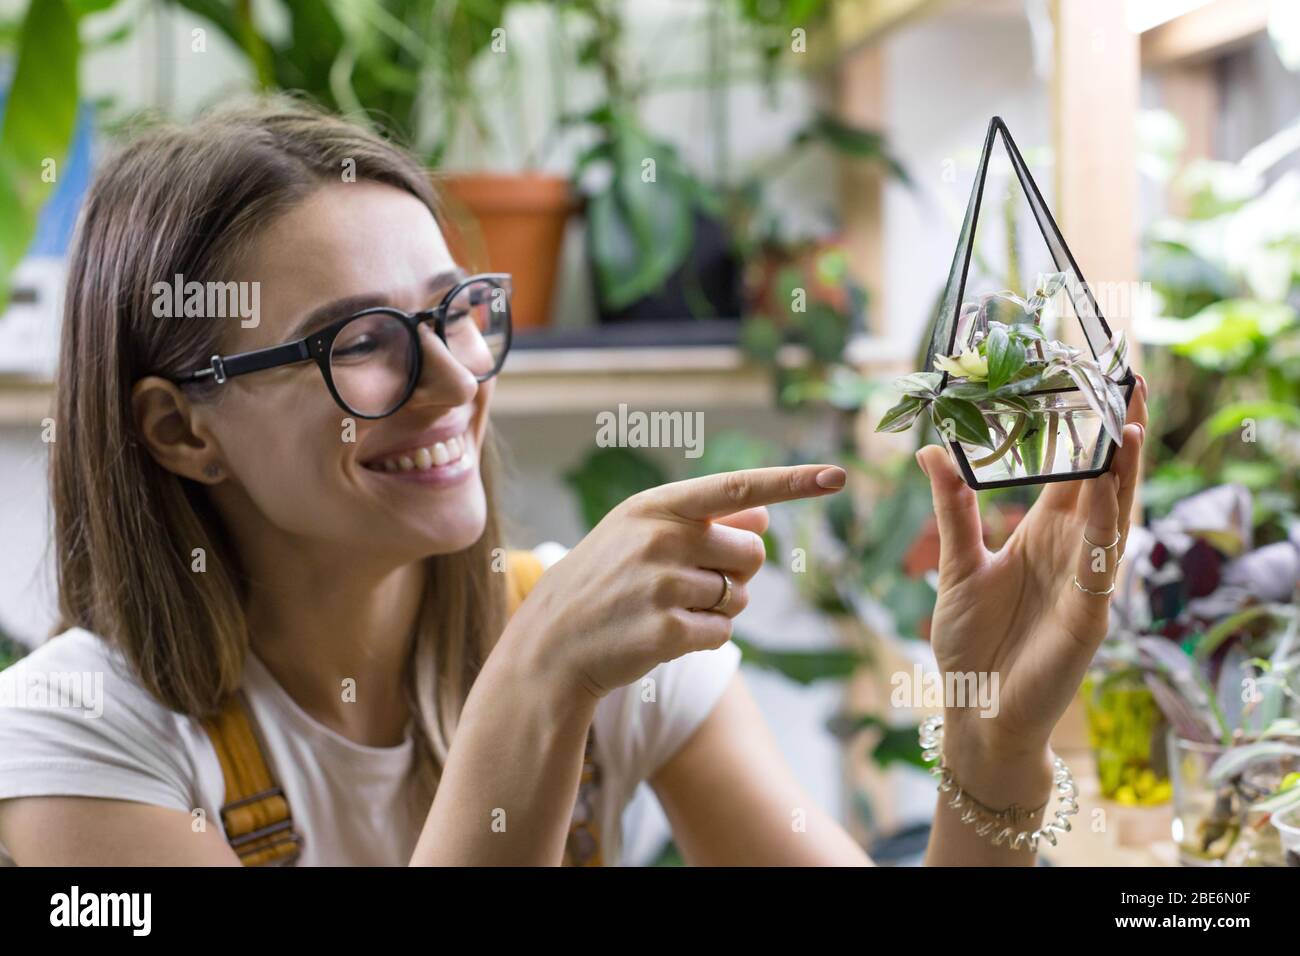 Le jardinier souriant de femmes dans les lunettes montre index sur les boutures de tradescantia dans un petit florarium de verre pour la germination des plantes, potted houseplan Banque D'Images